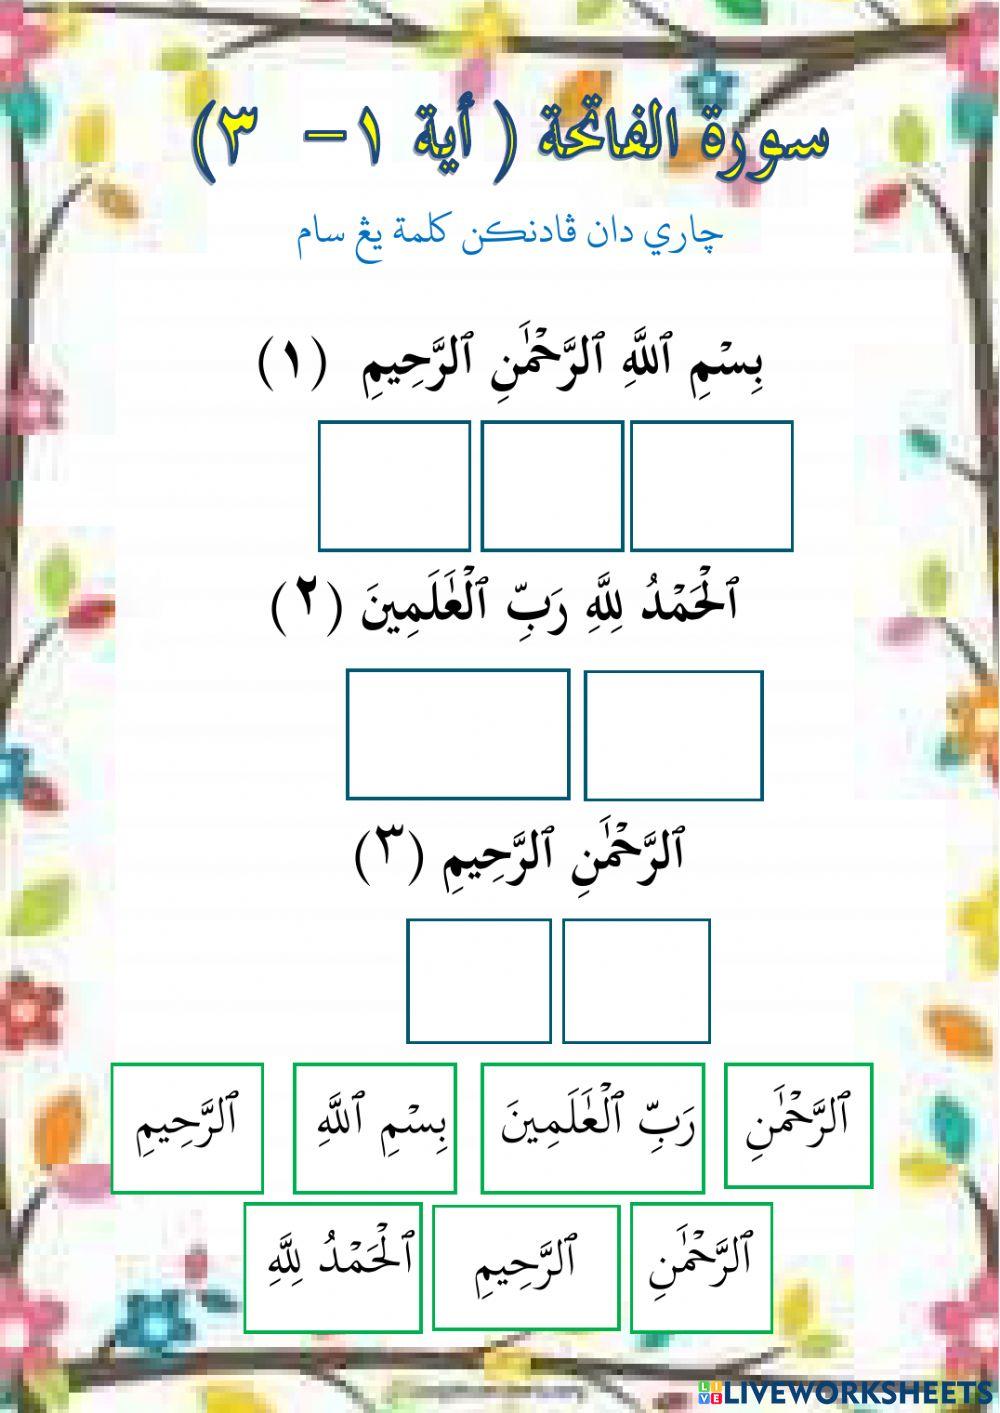 Surah Al-Fatihah (Ayat 1-3)